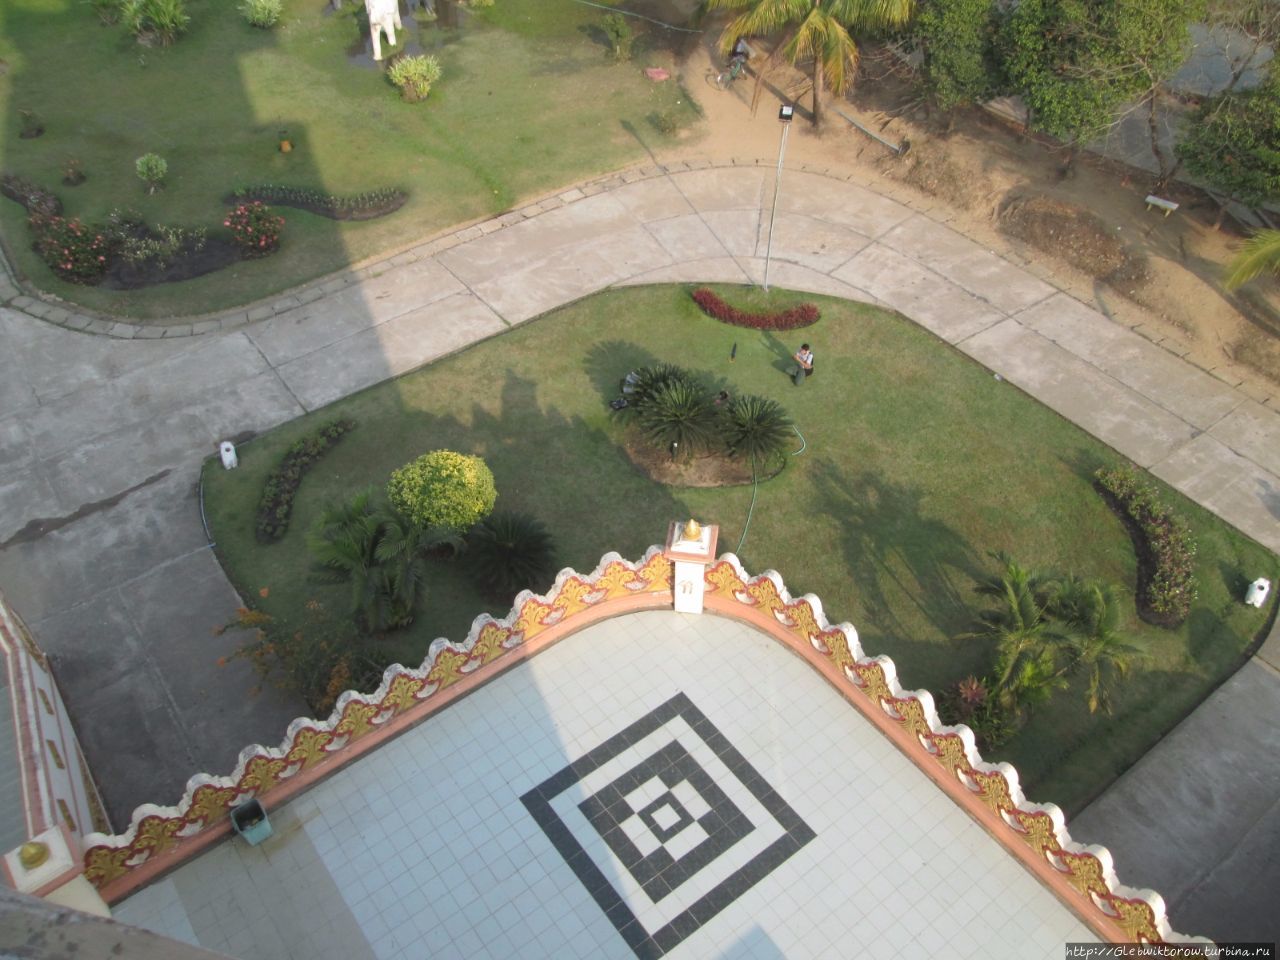 Смотровая башня в национальном музее под открытым небом Янгон, Мьянма